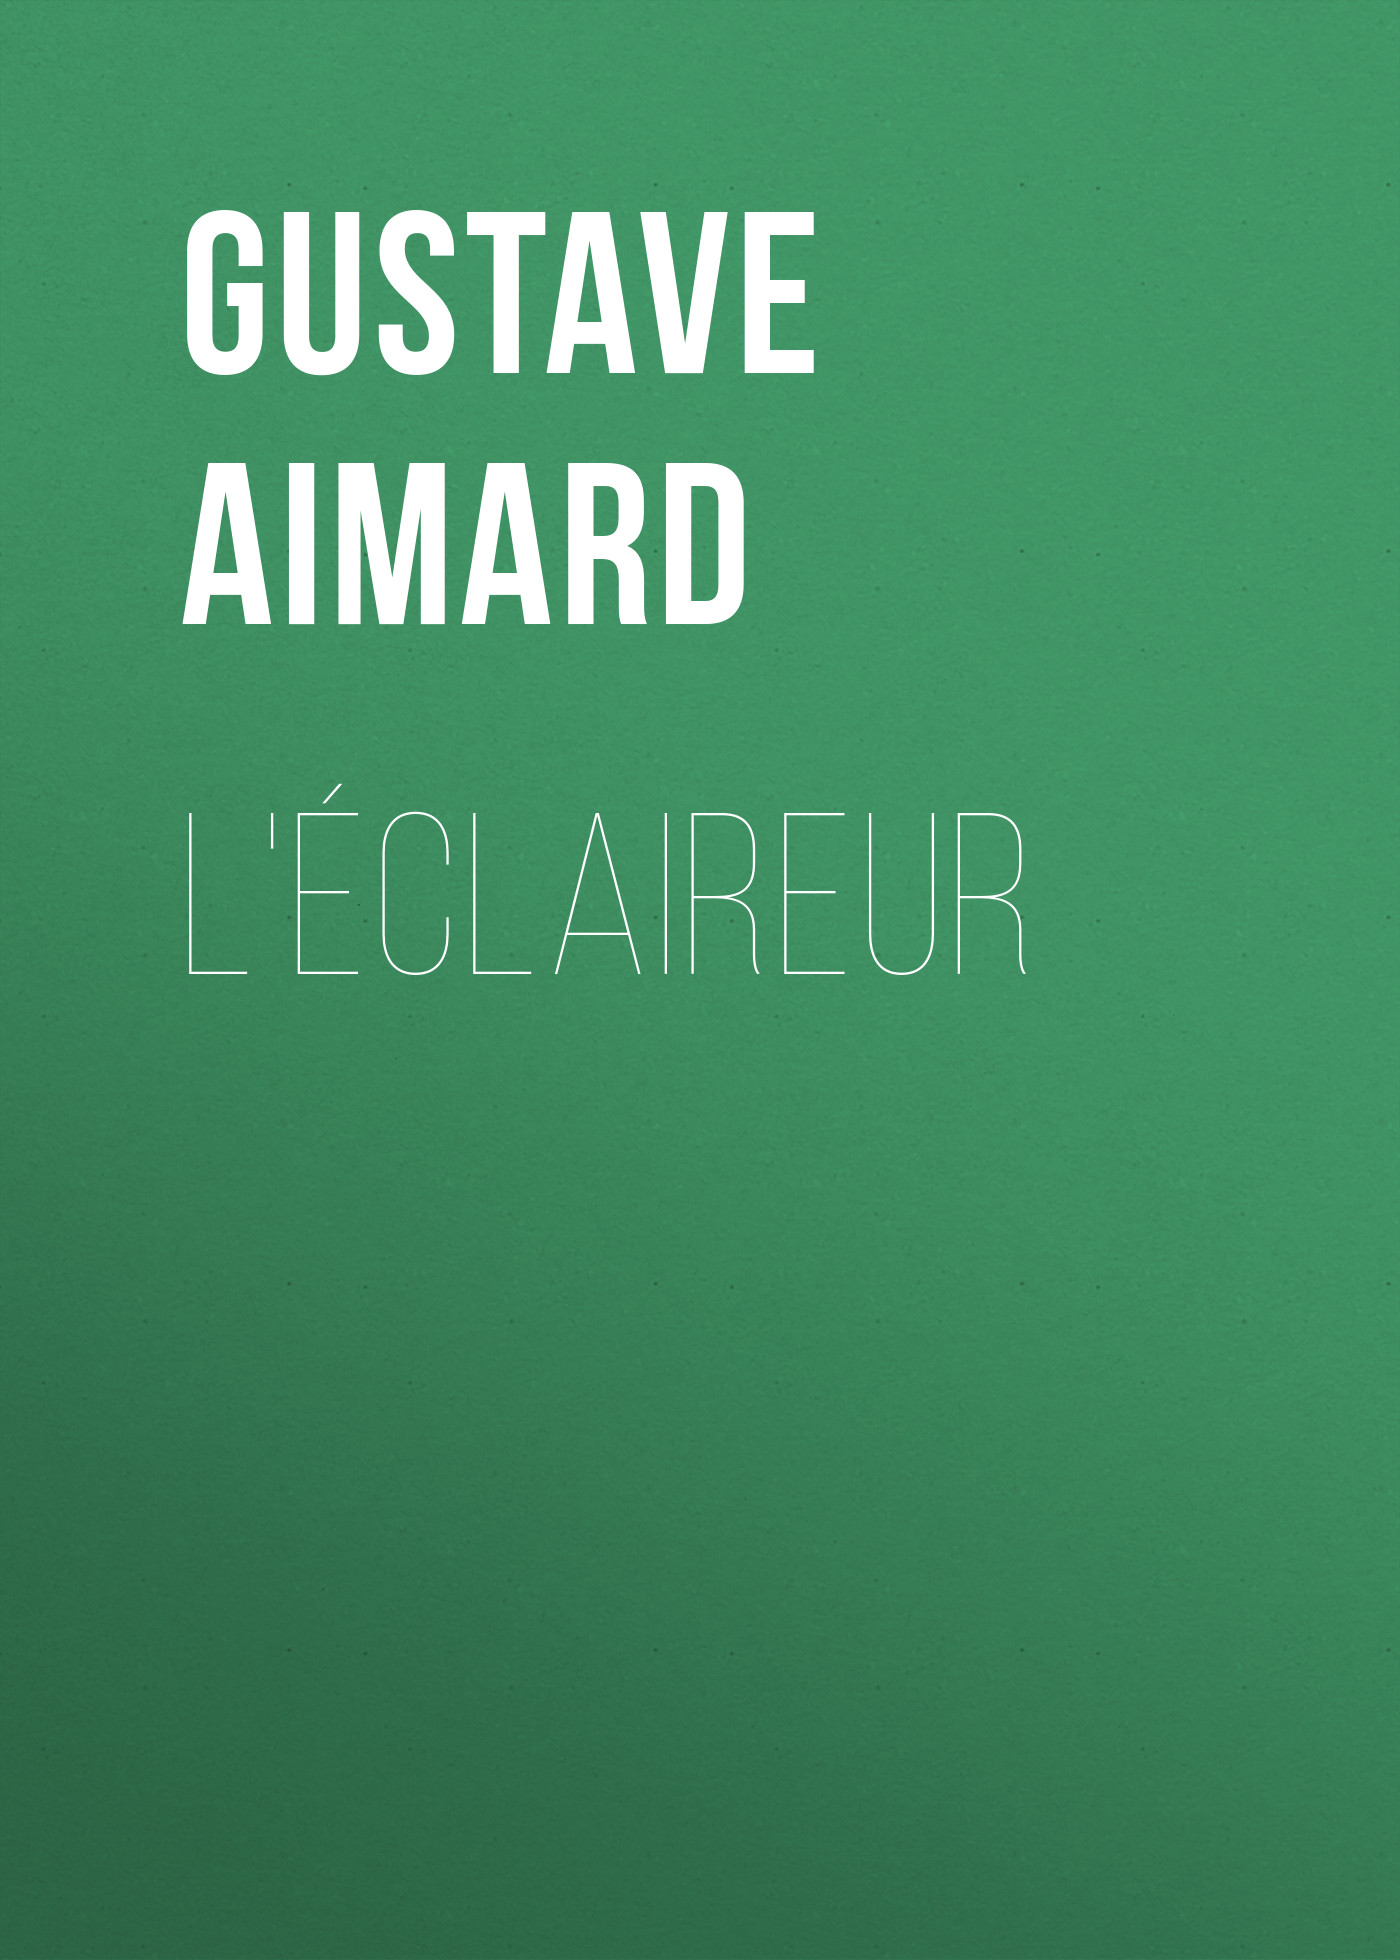 Книга L'éclaireur из серии , созданная Gustave Aimard, может относится к жанру Зарубежная старинная литература, Зарубежная классика. Стоимость электронной книги L'éclaireur с идентификатором 24175292 составляет 5.99 руб.